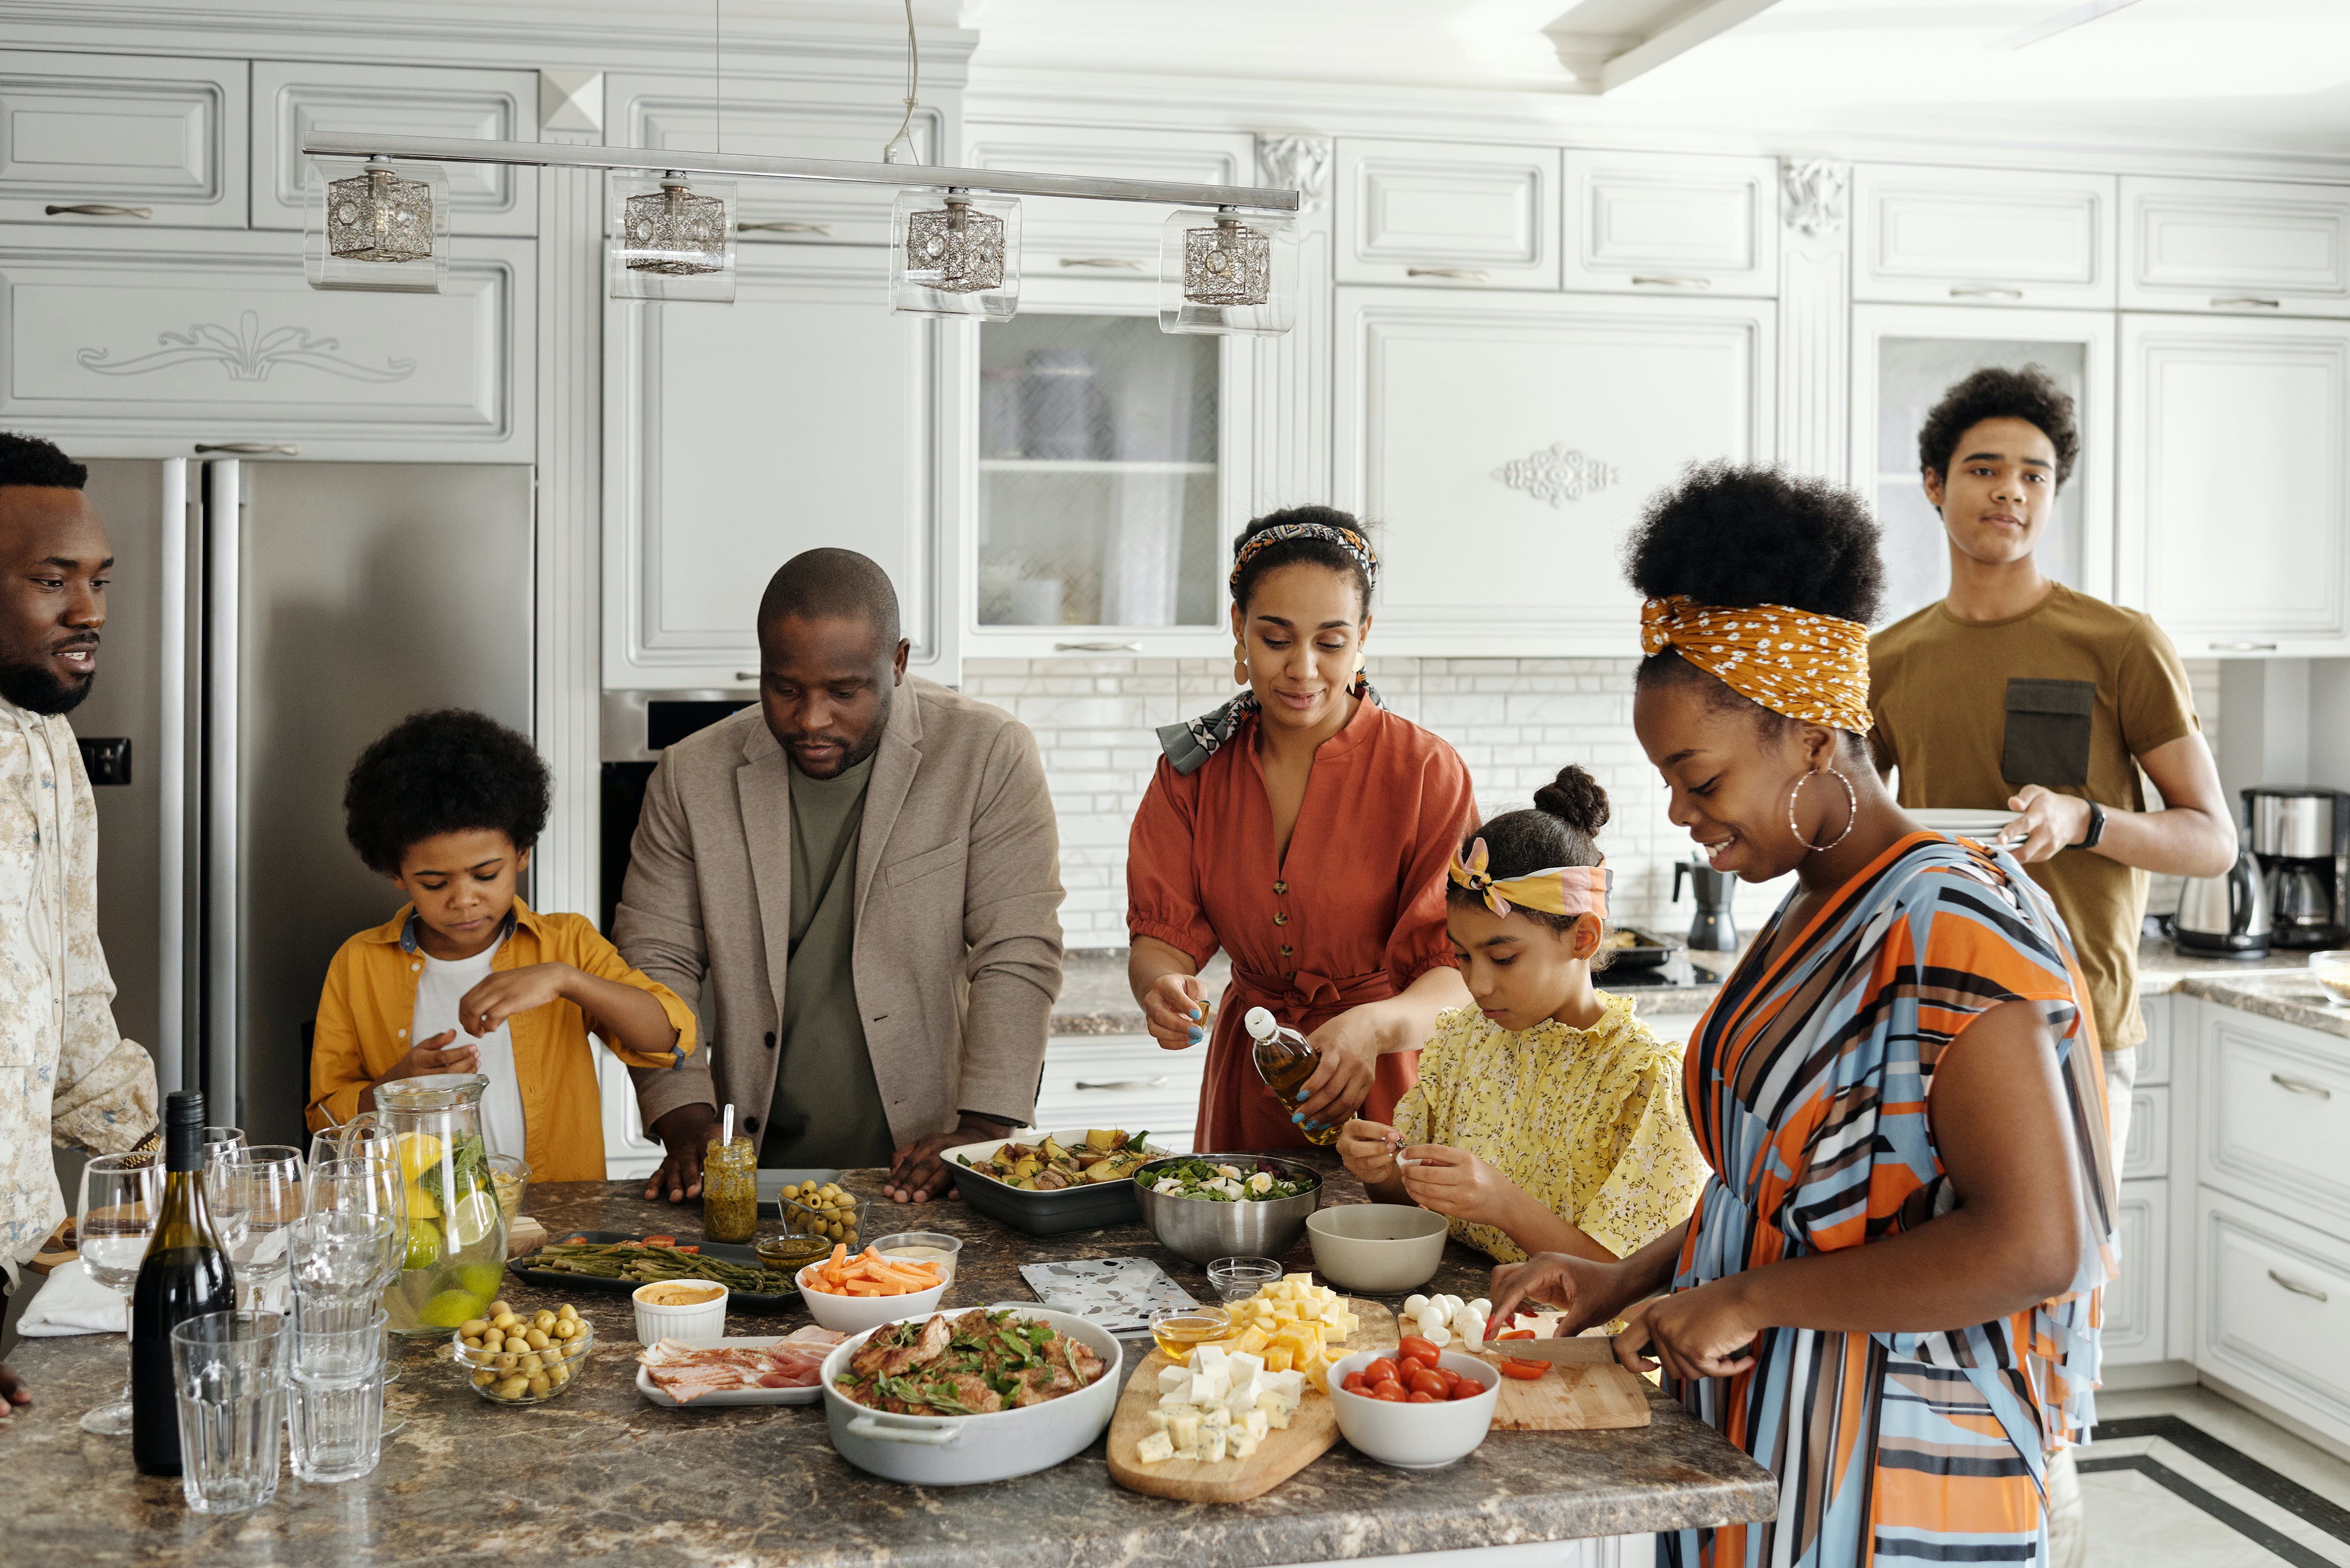 Une famille préparant un repas de fête | Source : Pexels